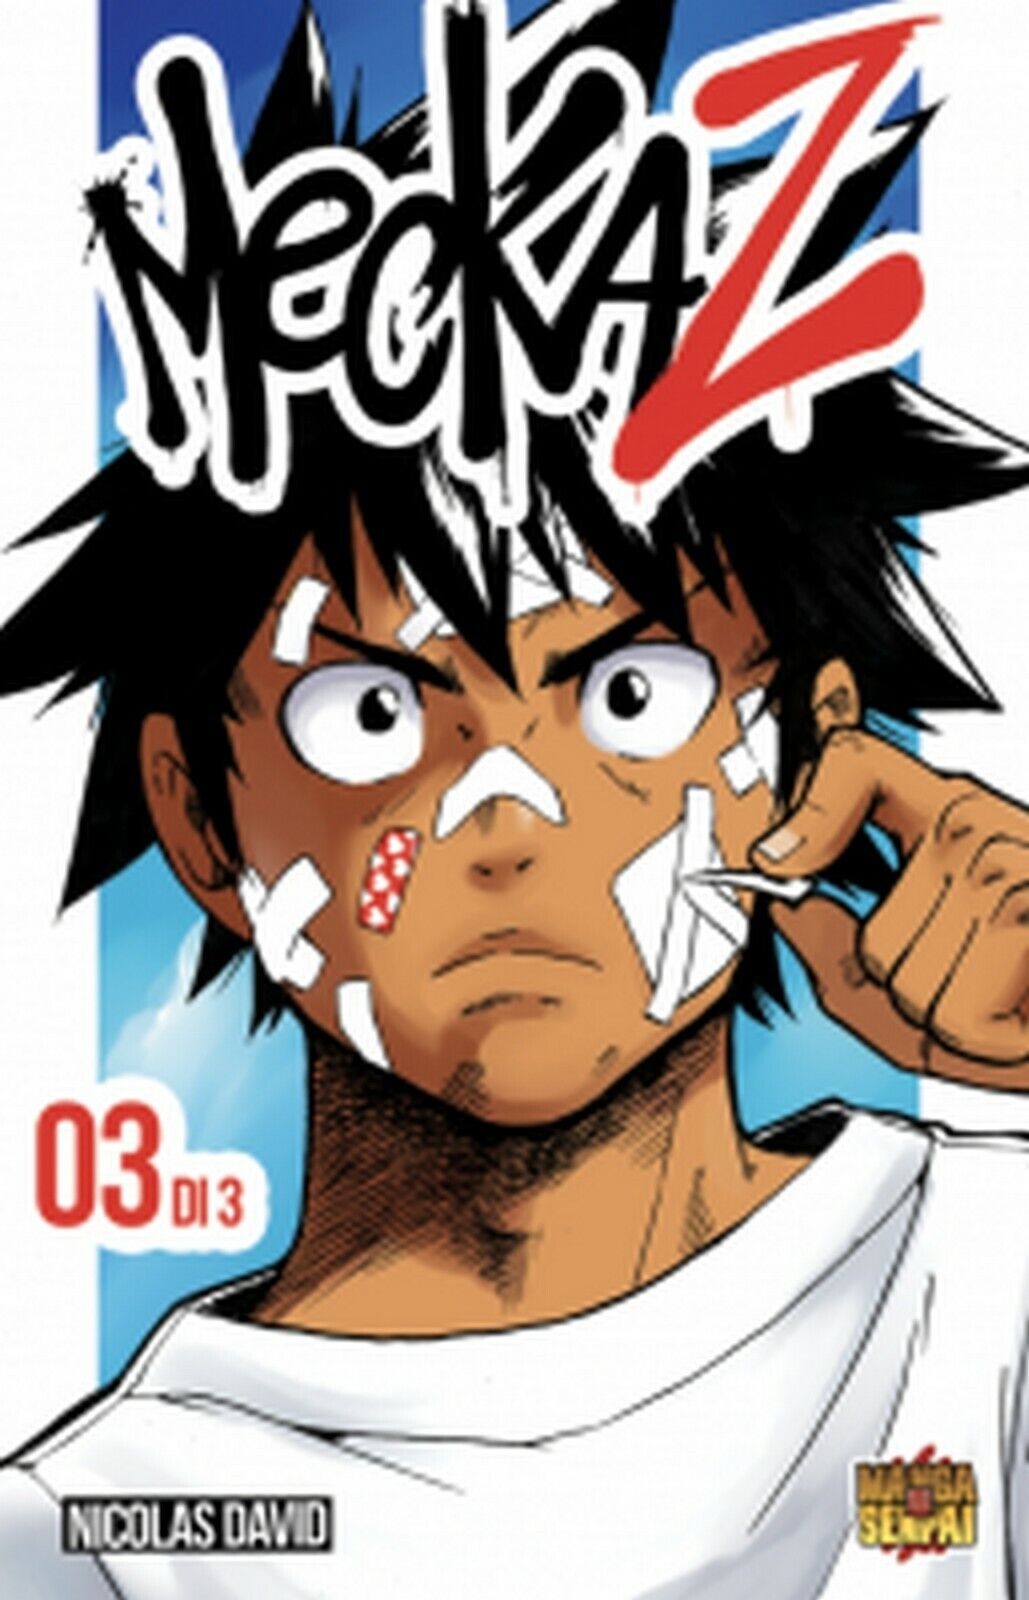 MeckaZ: 3  di Nicolas David,  2019,  Manga Senpai